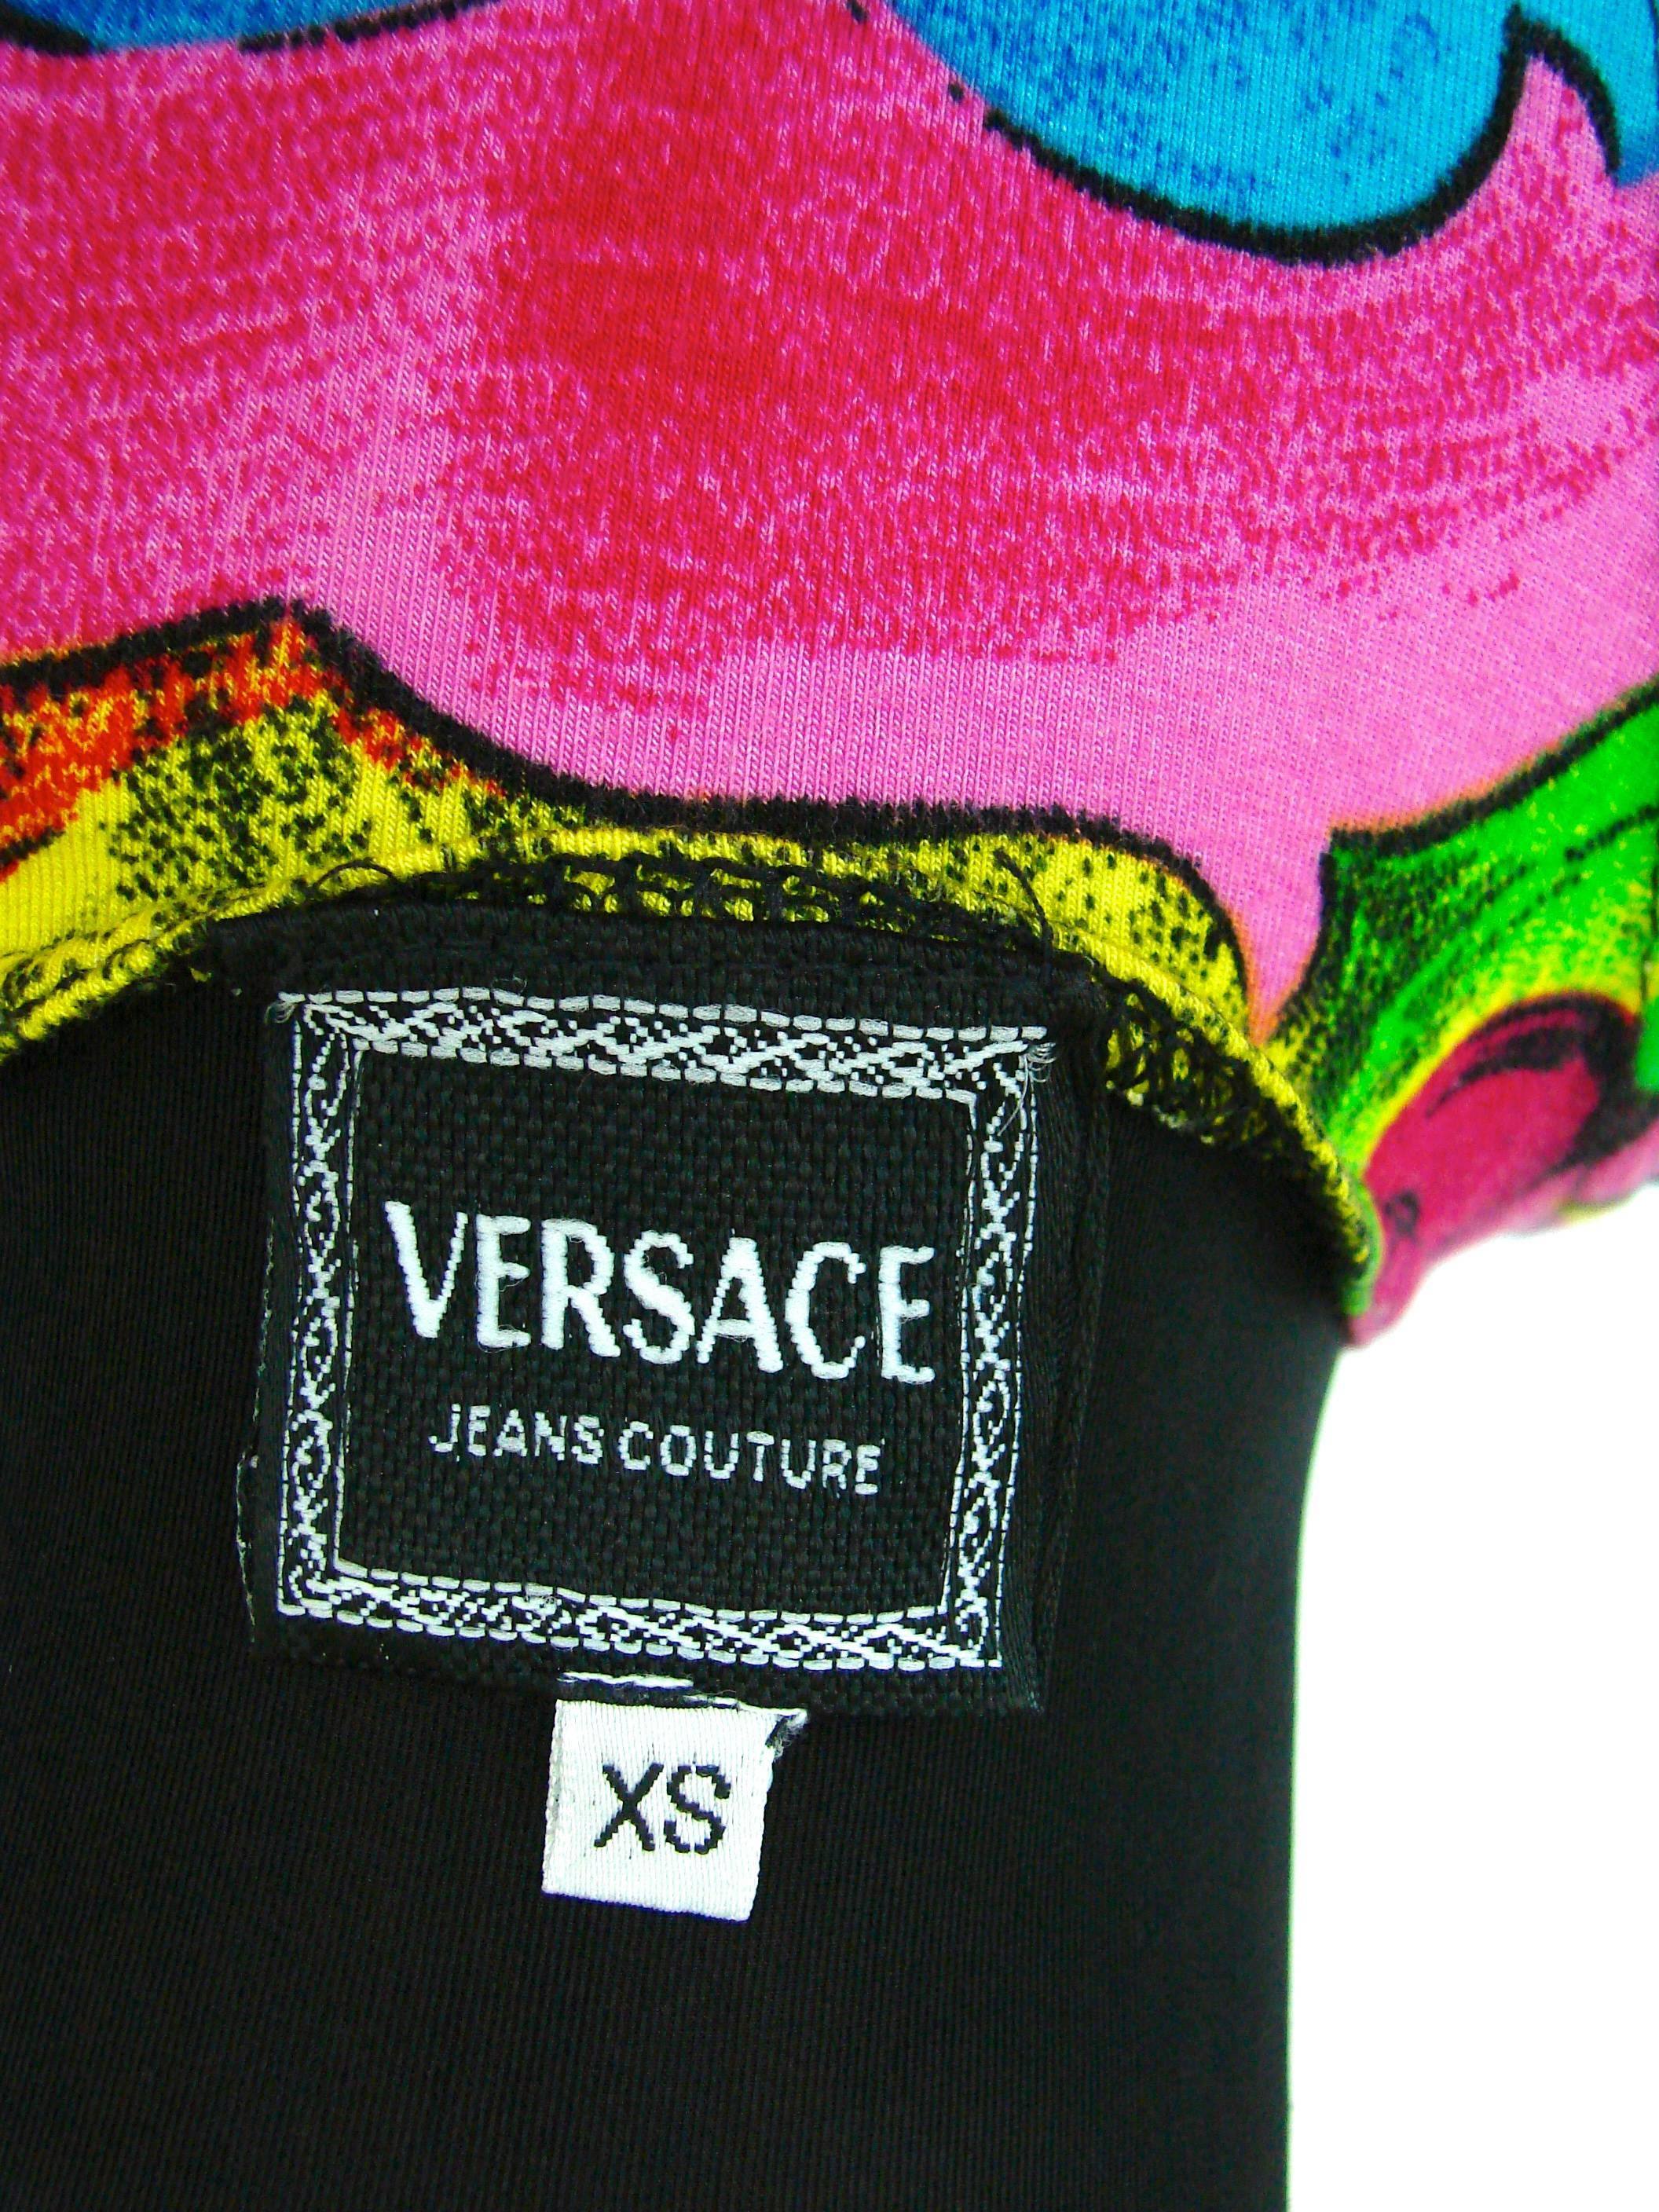 Pink Original Versace Jeans Couture Pop Art Tank Top Betty Boop Marlene Dietrich XS